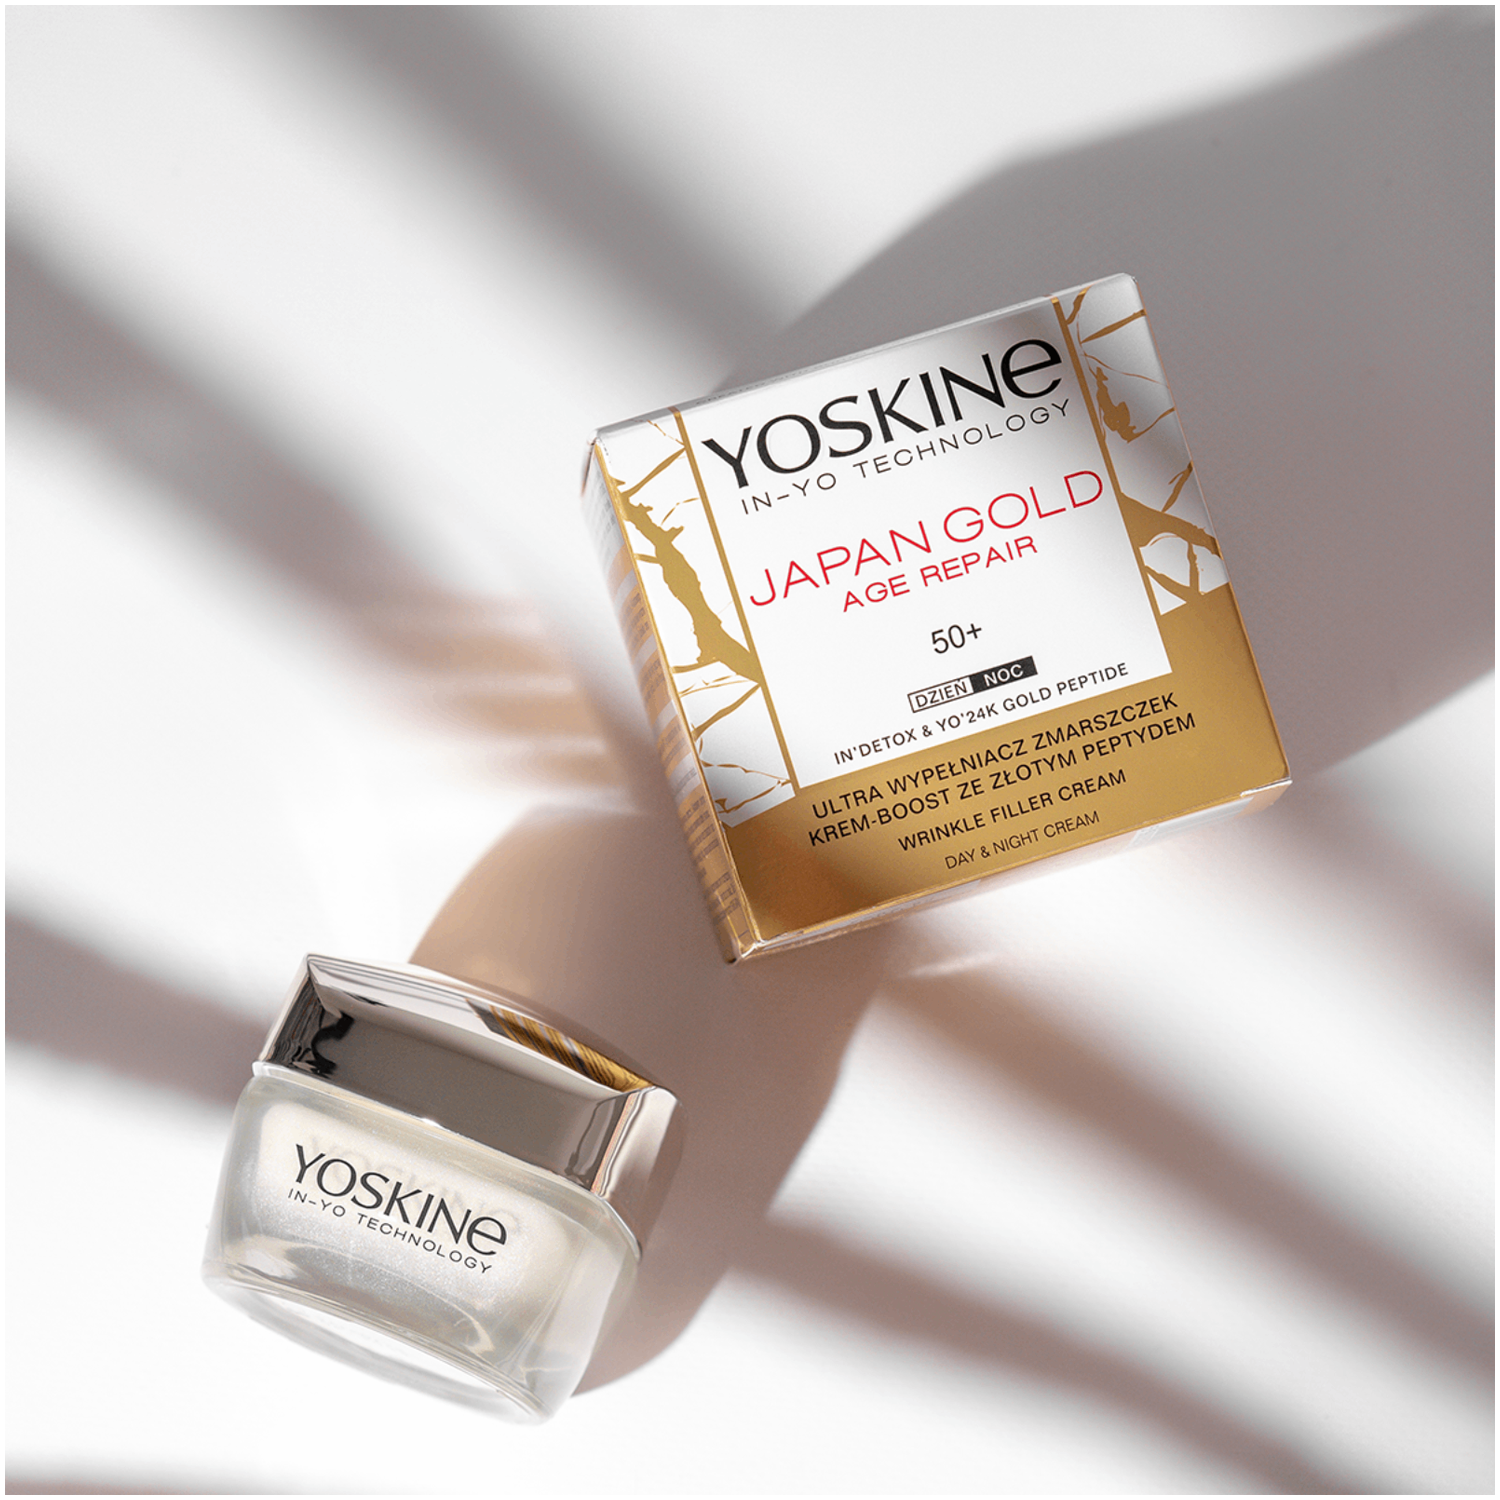 Yoskine Japan Gold Дневной и ночной крем для лица 50+, 50 мл